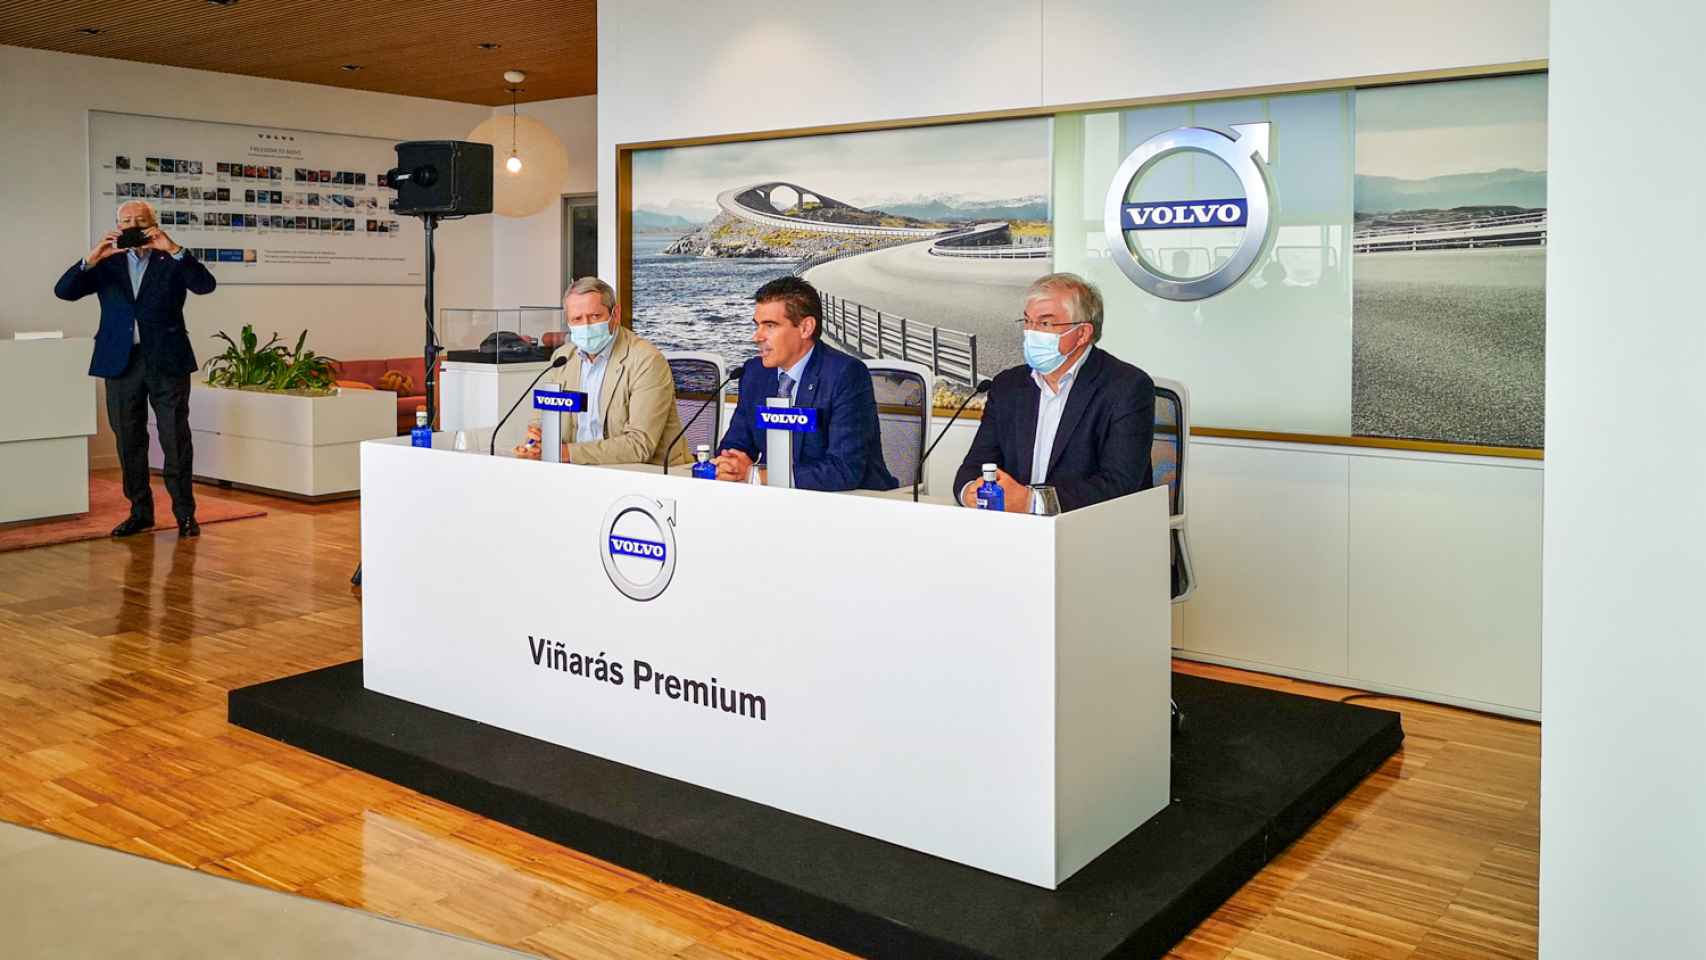 Inauguracion Volvo en Illescas.